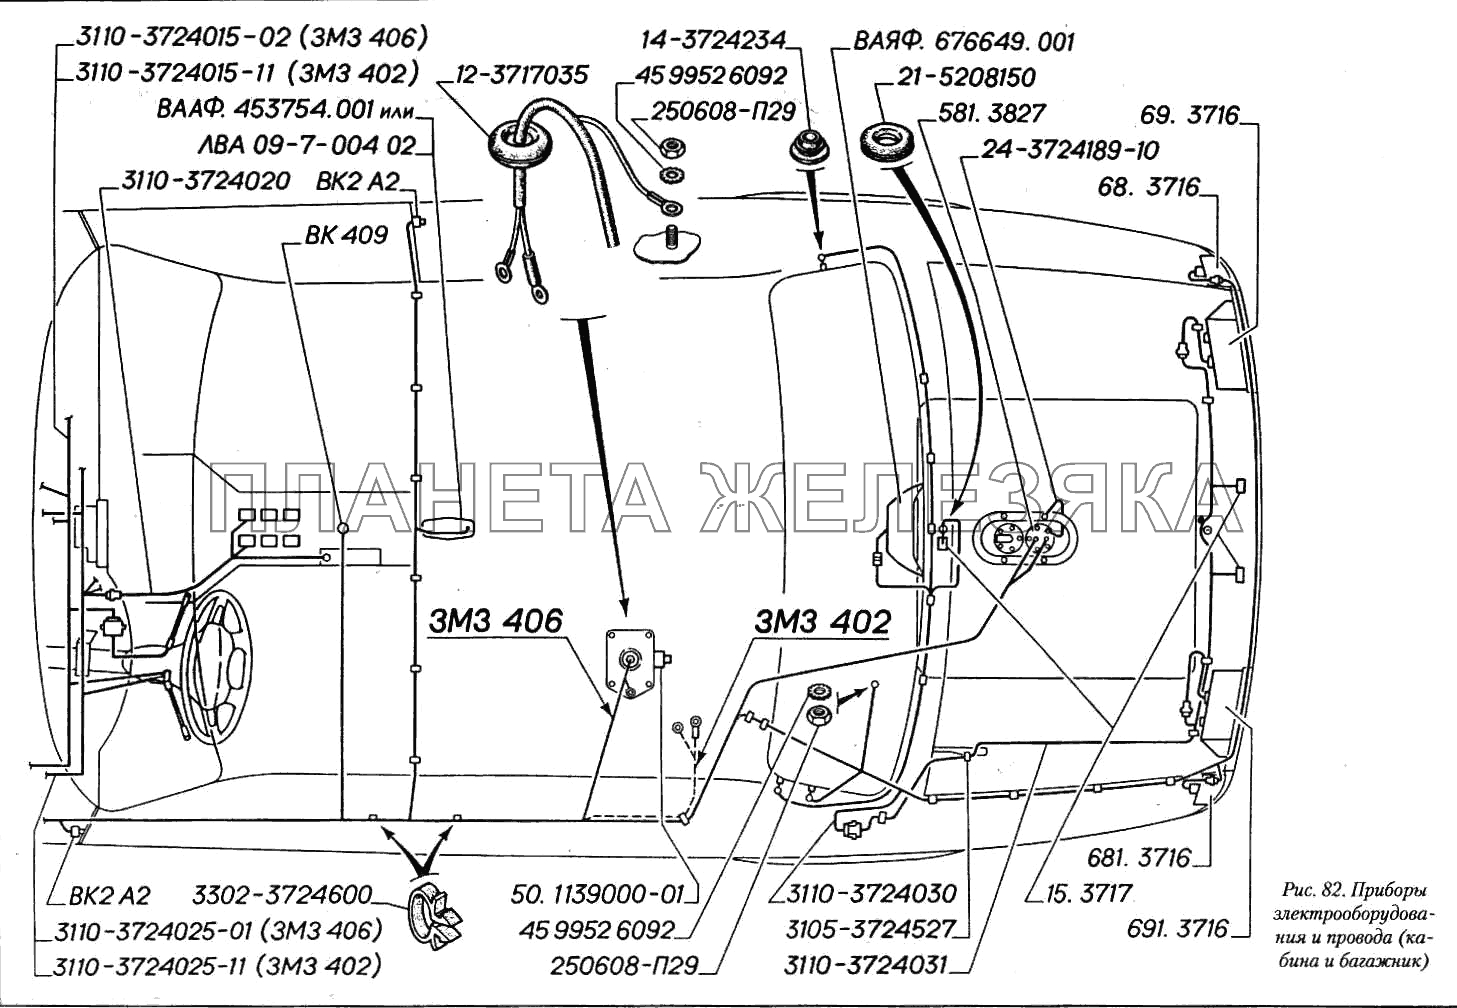 Приборы электрооборудования и провода (кабина и багажник) ГАЗ-3110